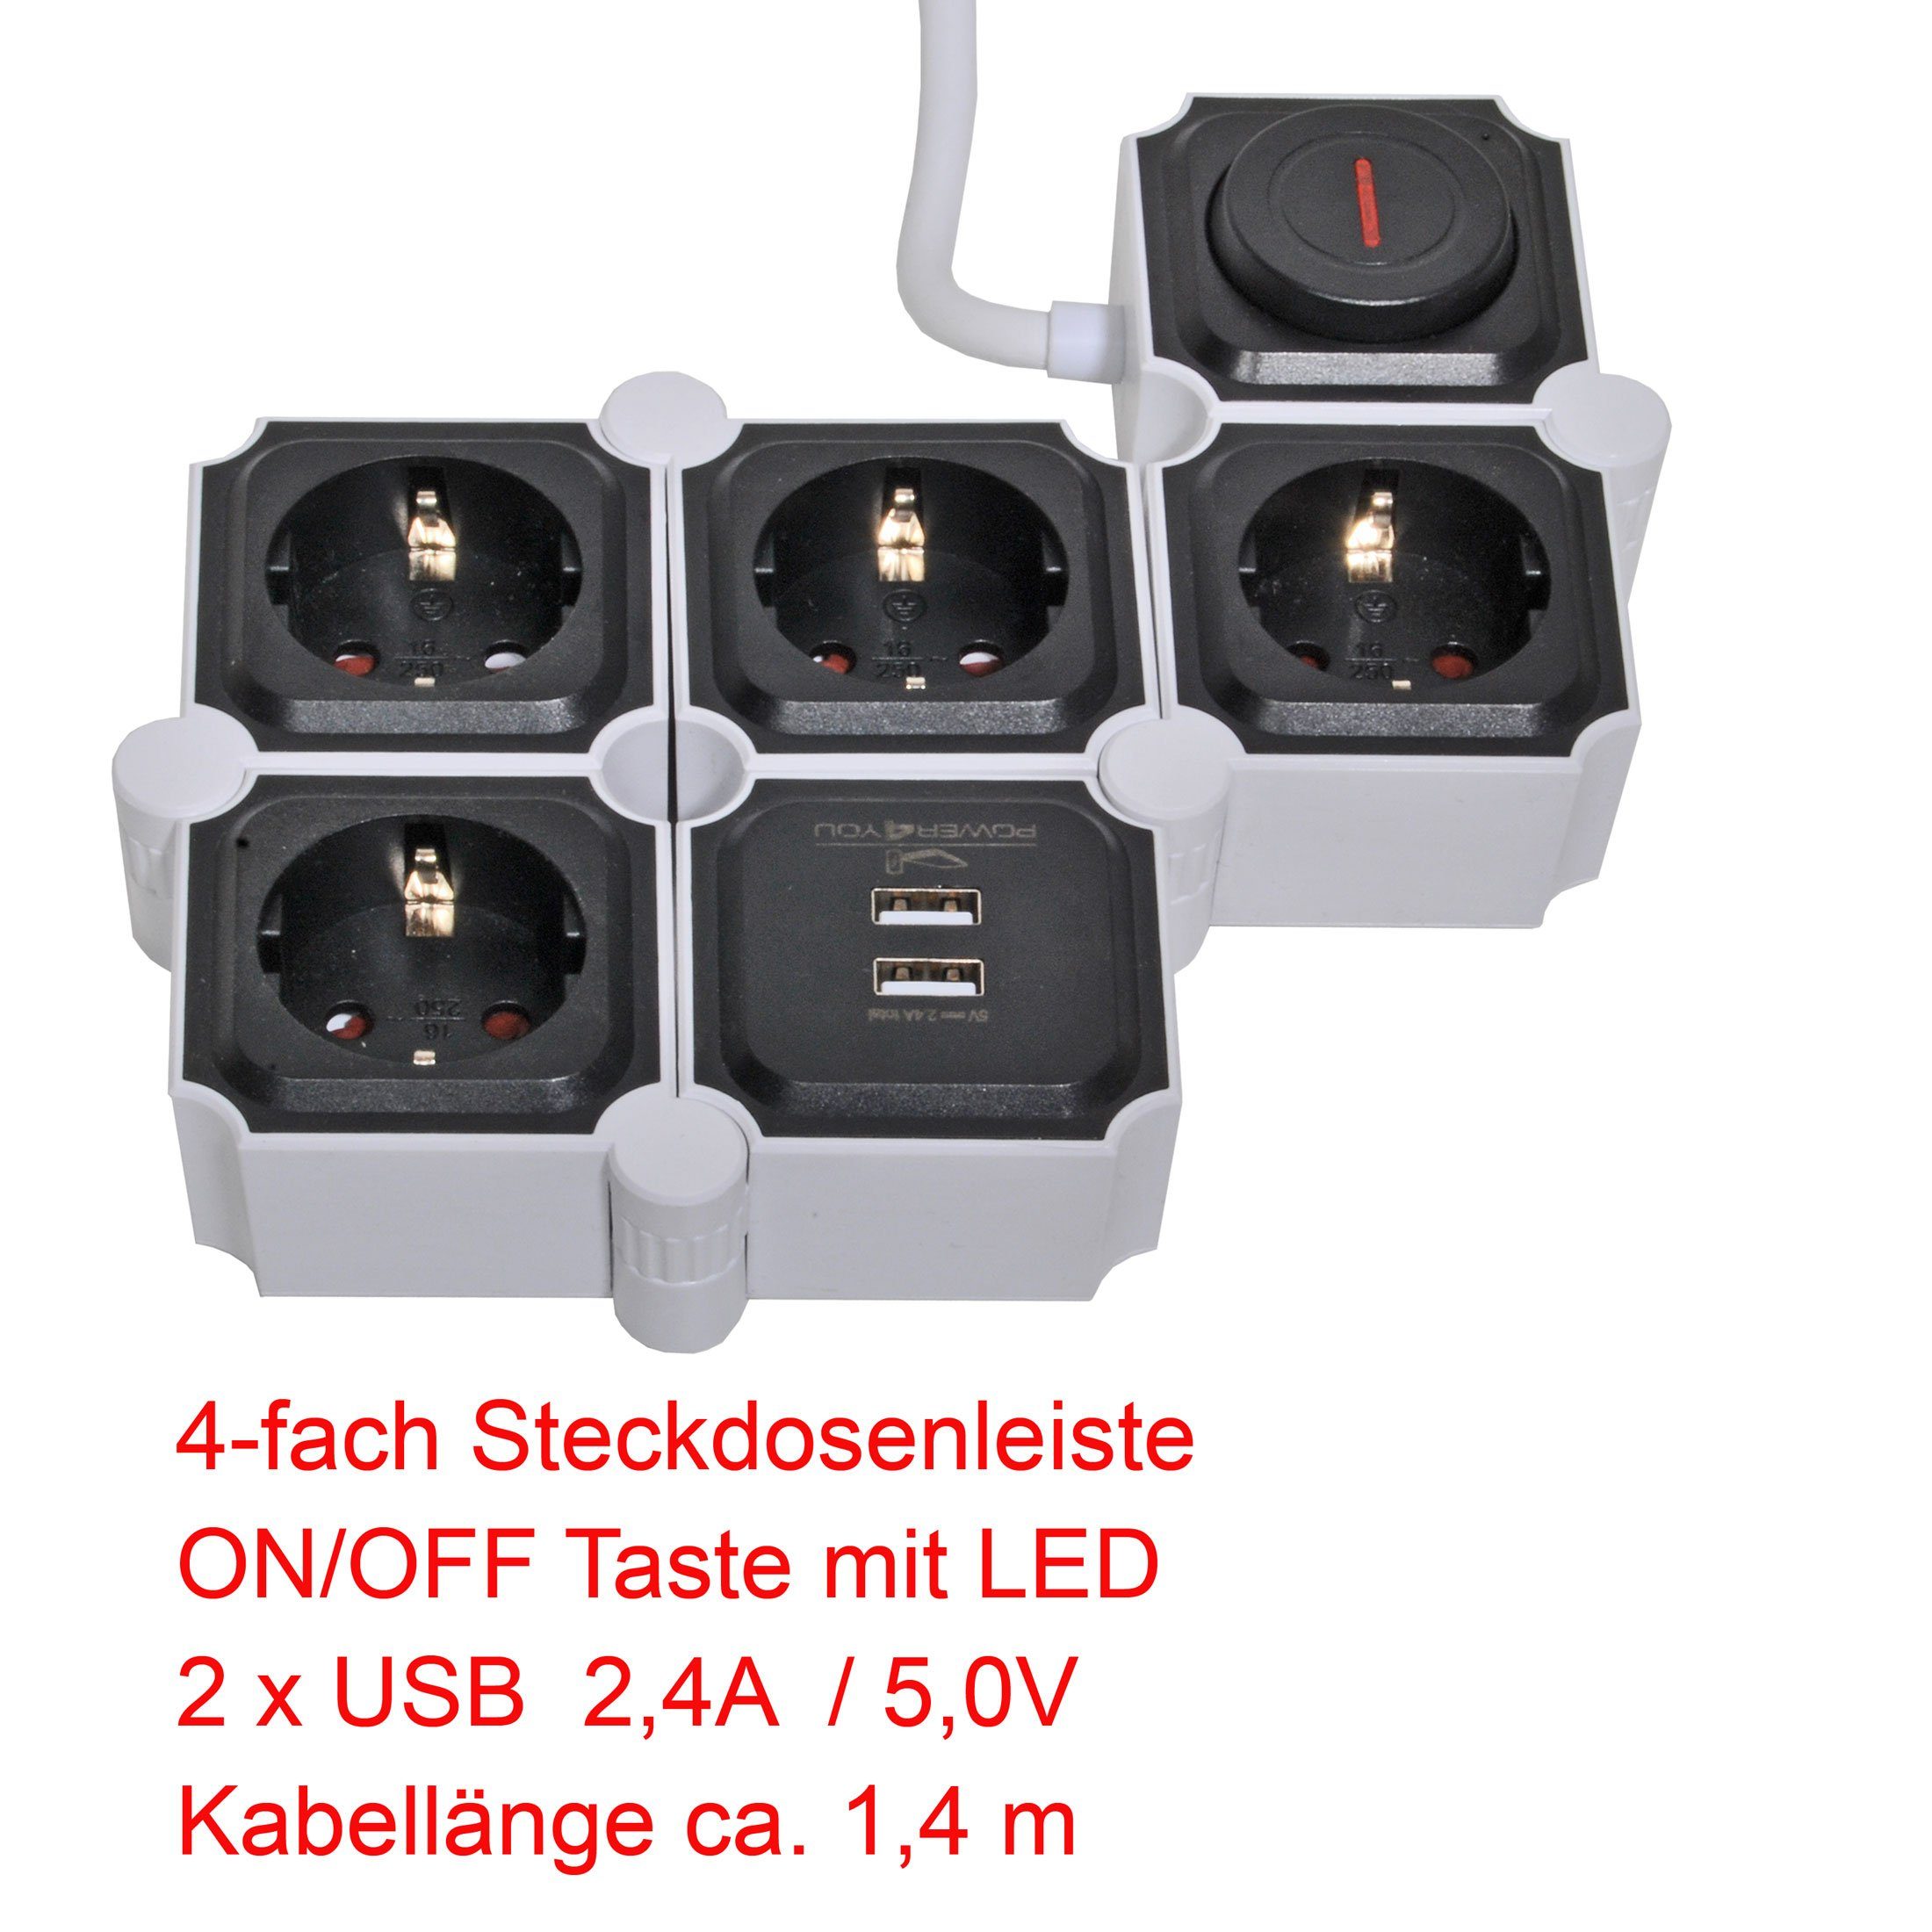 4-fach x 12w / Steckdosenleiste Mehrfachstecker (4,2A) Schalterbeleuchtung, USB-Anschlüsse, Ausschalter, inkl. Ausschalter, separate 1,5M schwarz USB USB Schwaiger Mehrfachsteckdose x 2 Flexible kabel), 2 Einsatz, Schalter / Ein- (Ein-